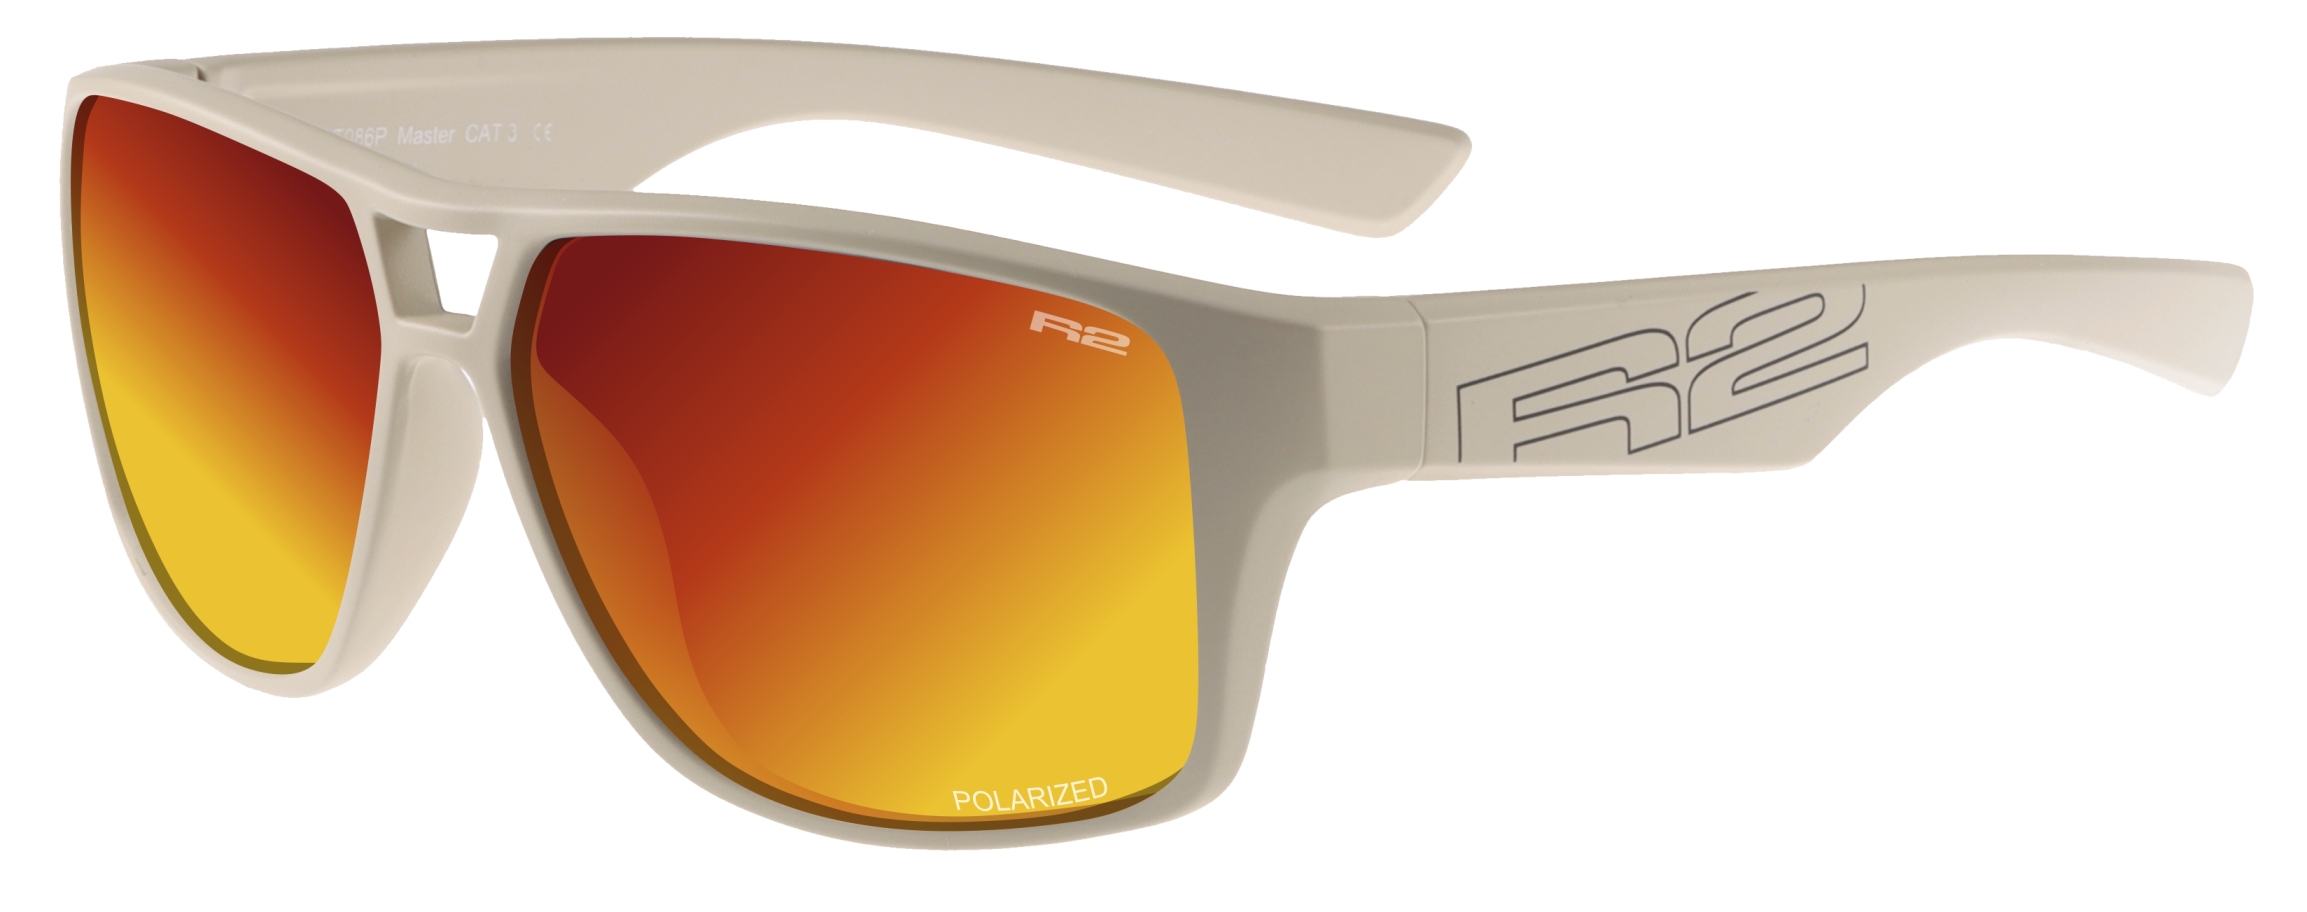 Sportovní sluneční brýle R2 MASTER AT086P - standard